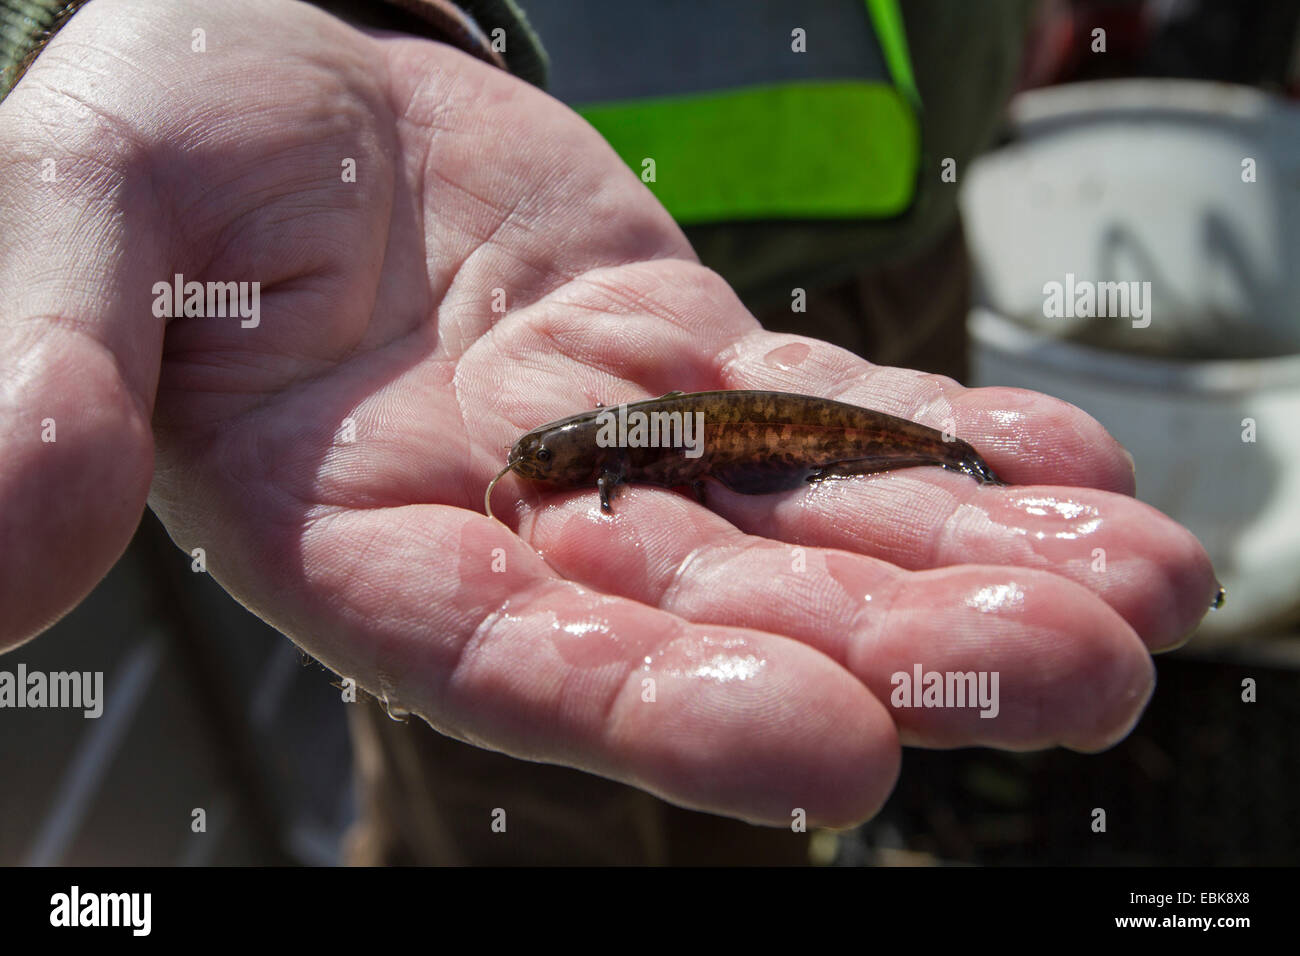 European catfish, wels, sheatfish, wels catfish (Silurus glanis), juvenile on a hand, Germany Stock Photo